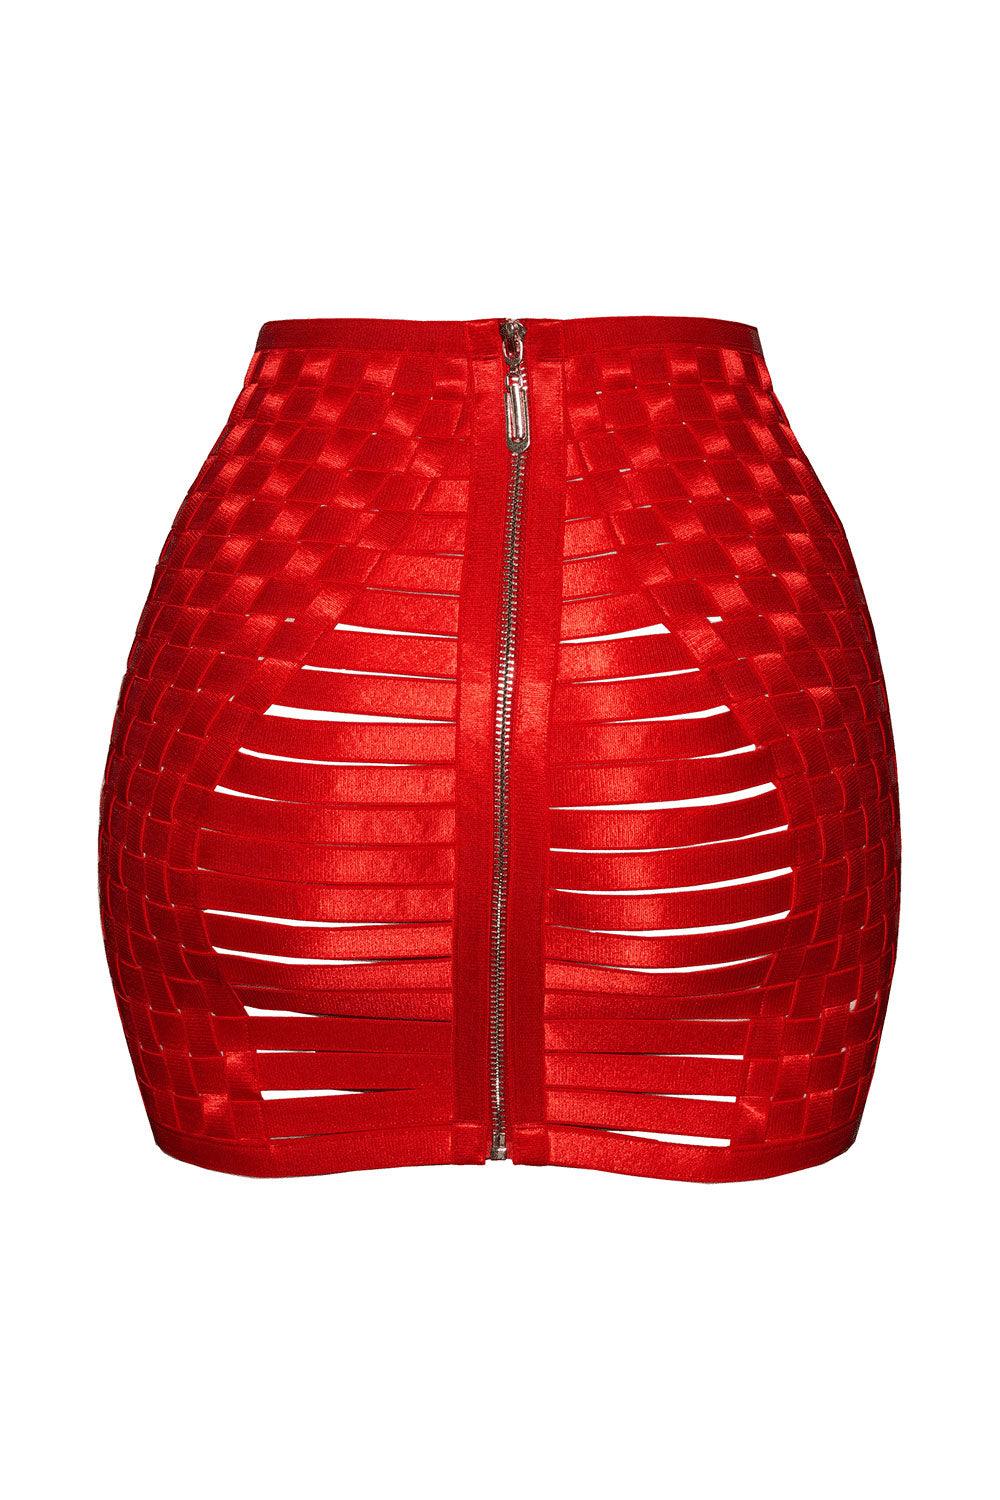 Yarara Skirt - Bondage skirt by Keosme. Shop on yesUndress